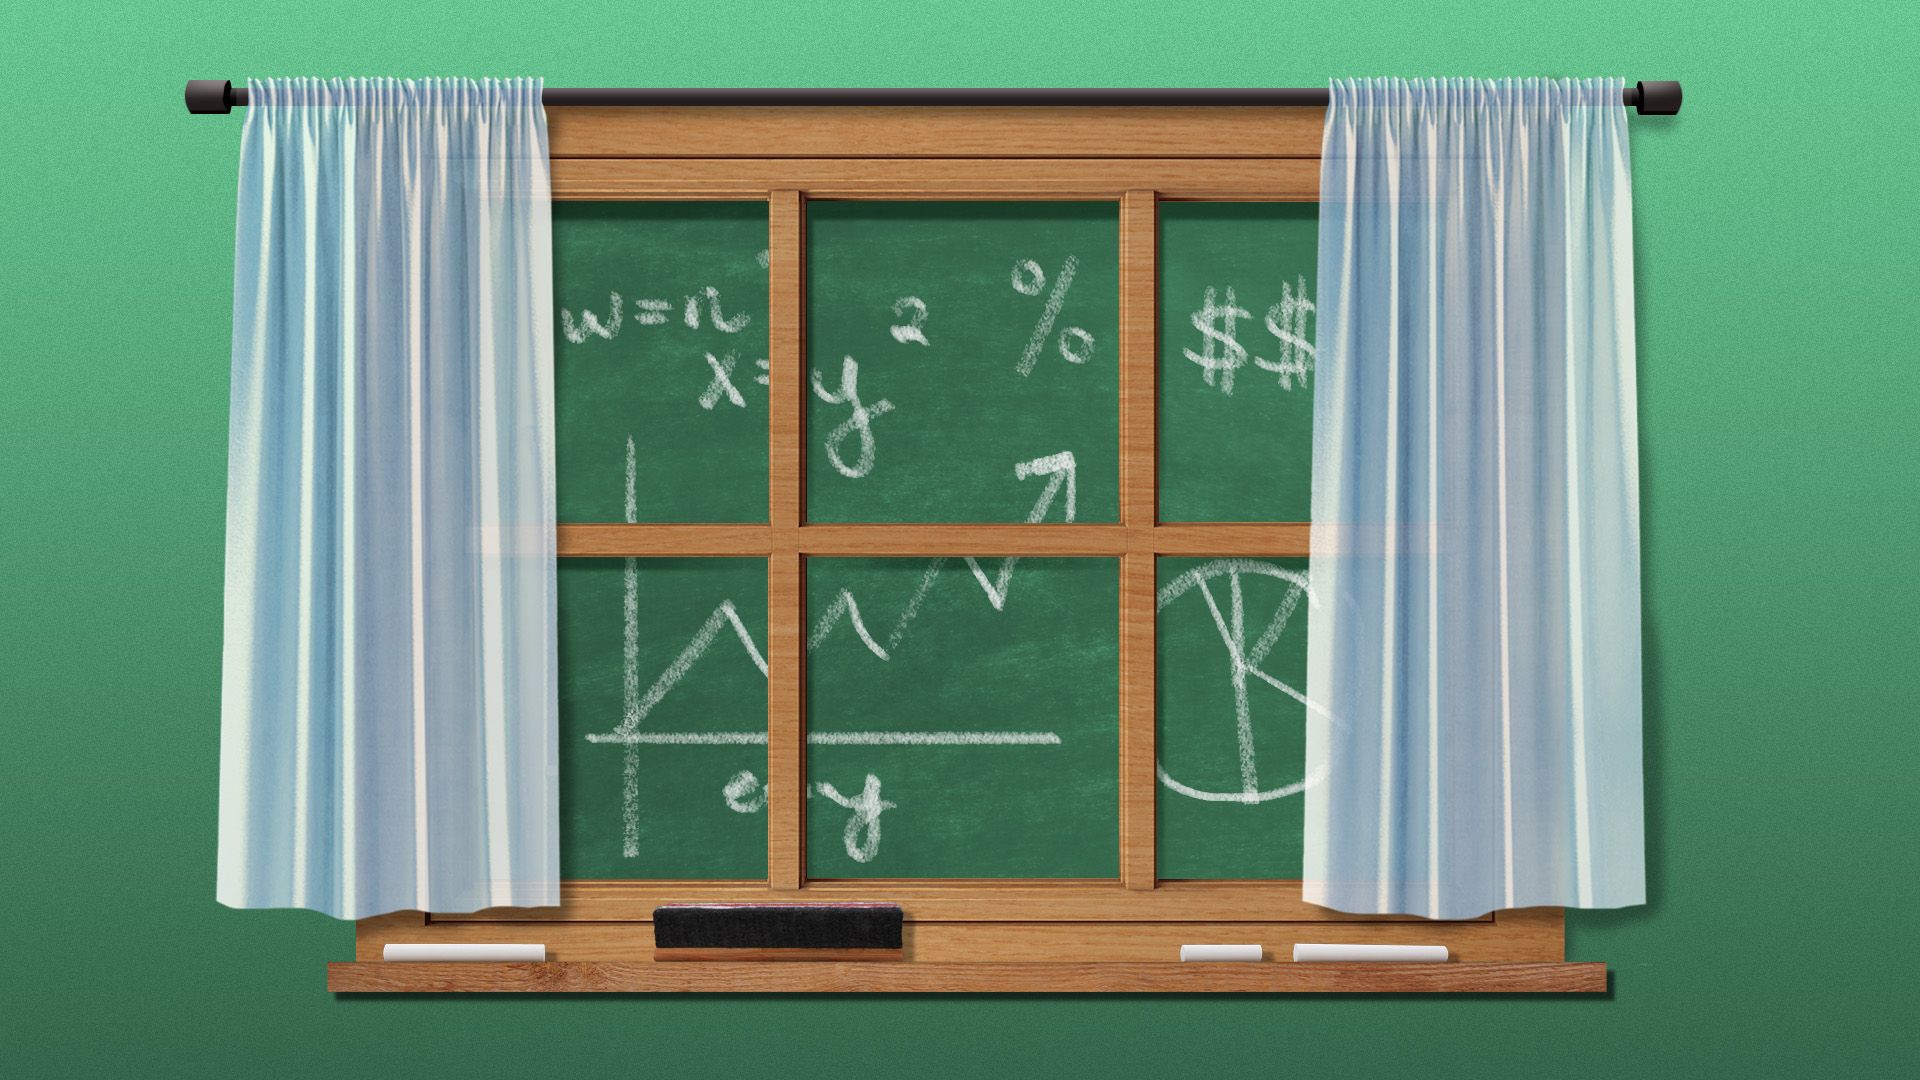 Illustration of a chalkboard as a window